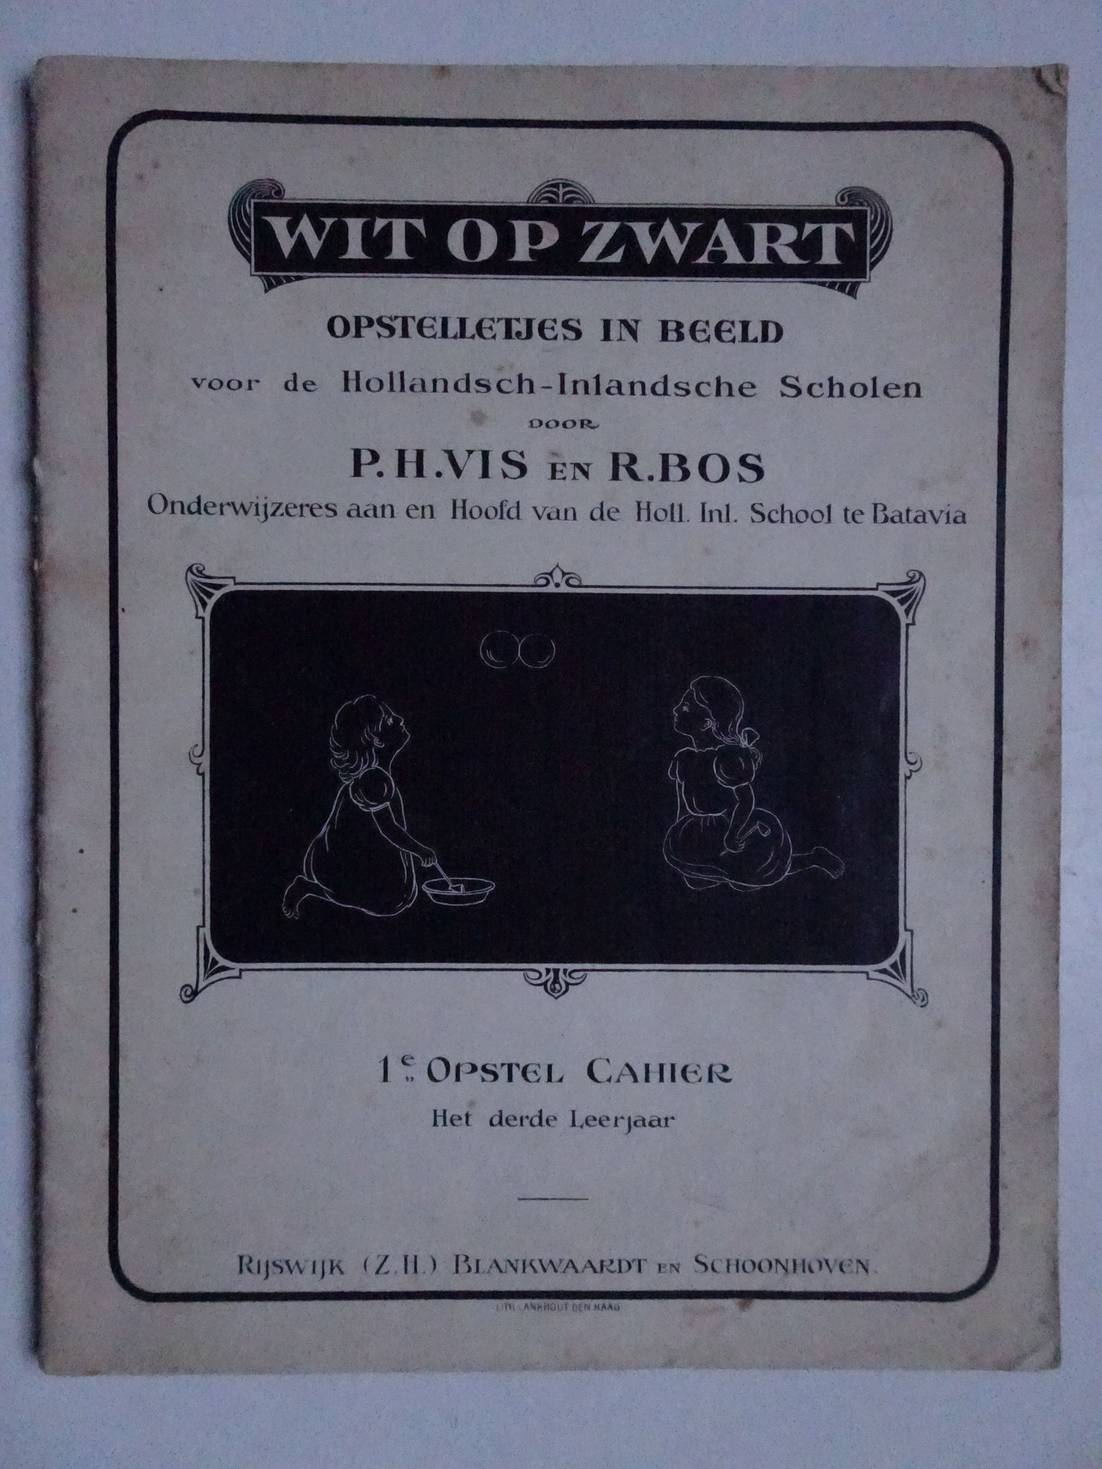 Vis, P.H. & R. Bos. - Wit op zwart. Opstelletjes in beeld voor de Hollandsch-Inlandsche Scholen. 1e Opstel Cahier, het derde leerjaar.